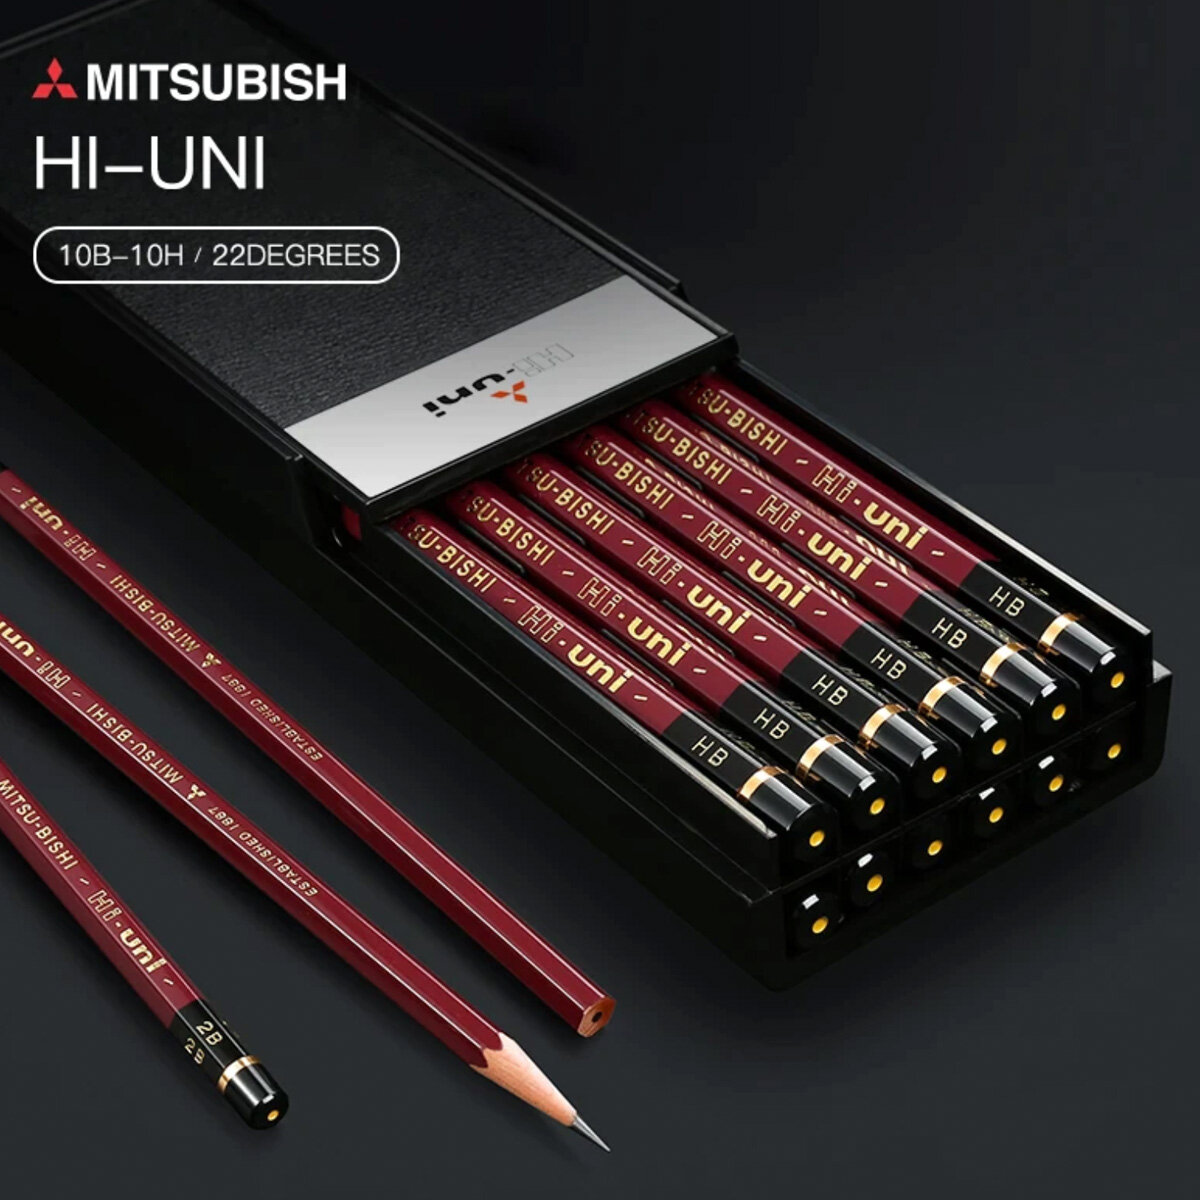 Mitsubishi Electric | Uni Hi-Uni Wooden Pencil - 10B (3 pieces